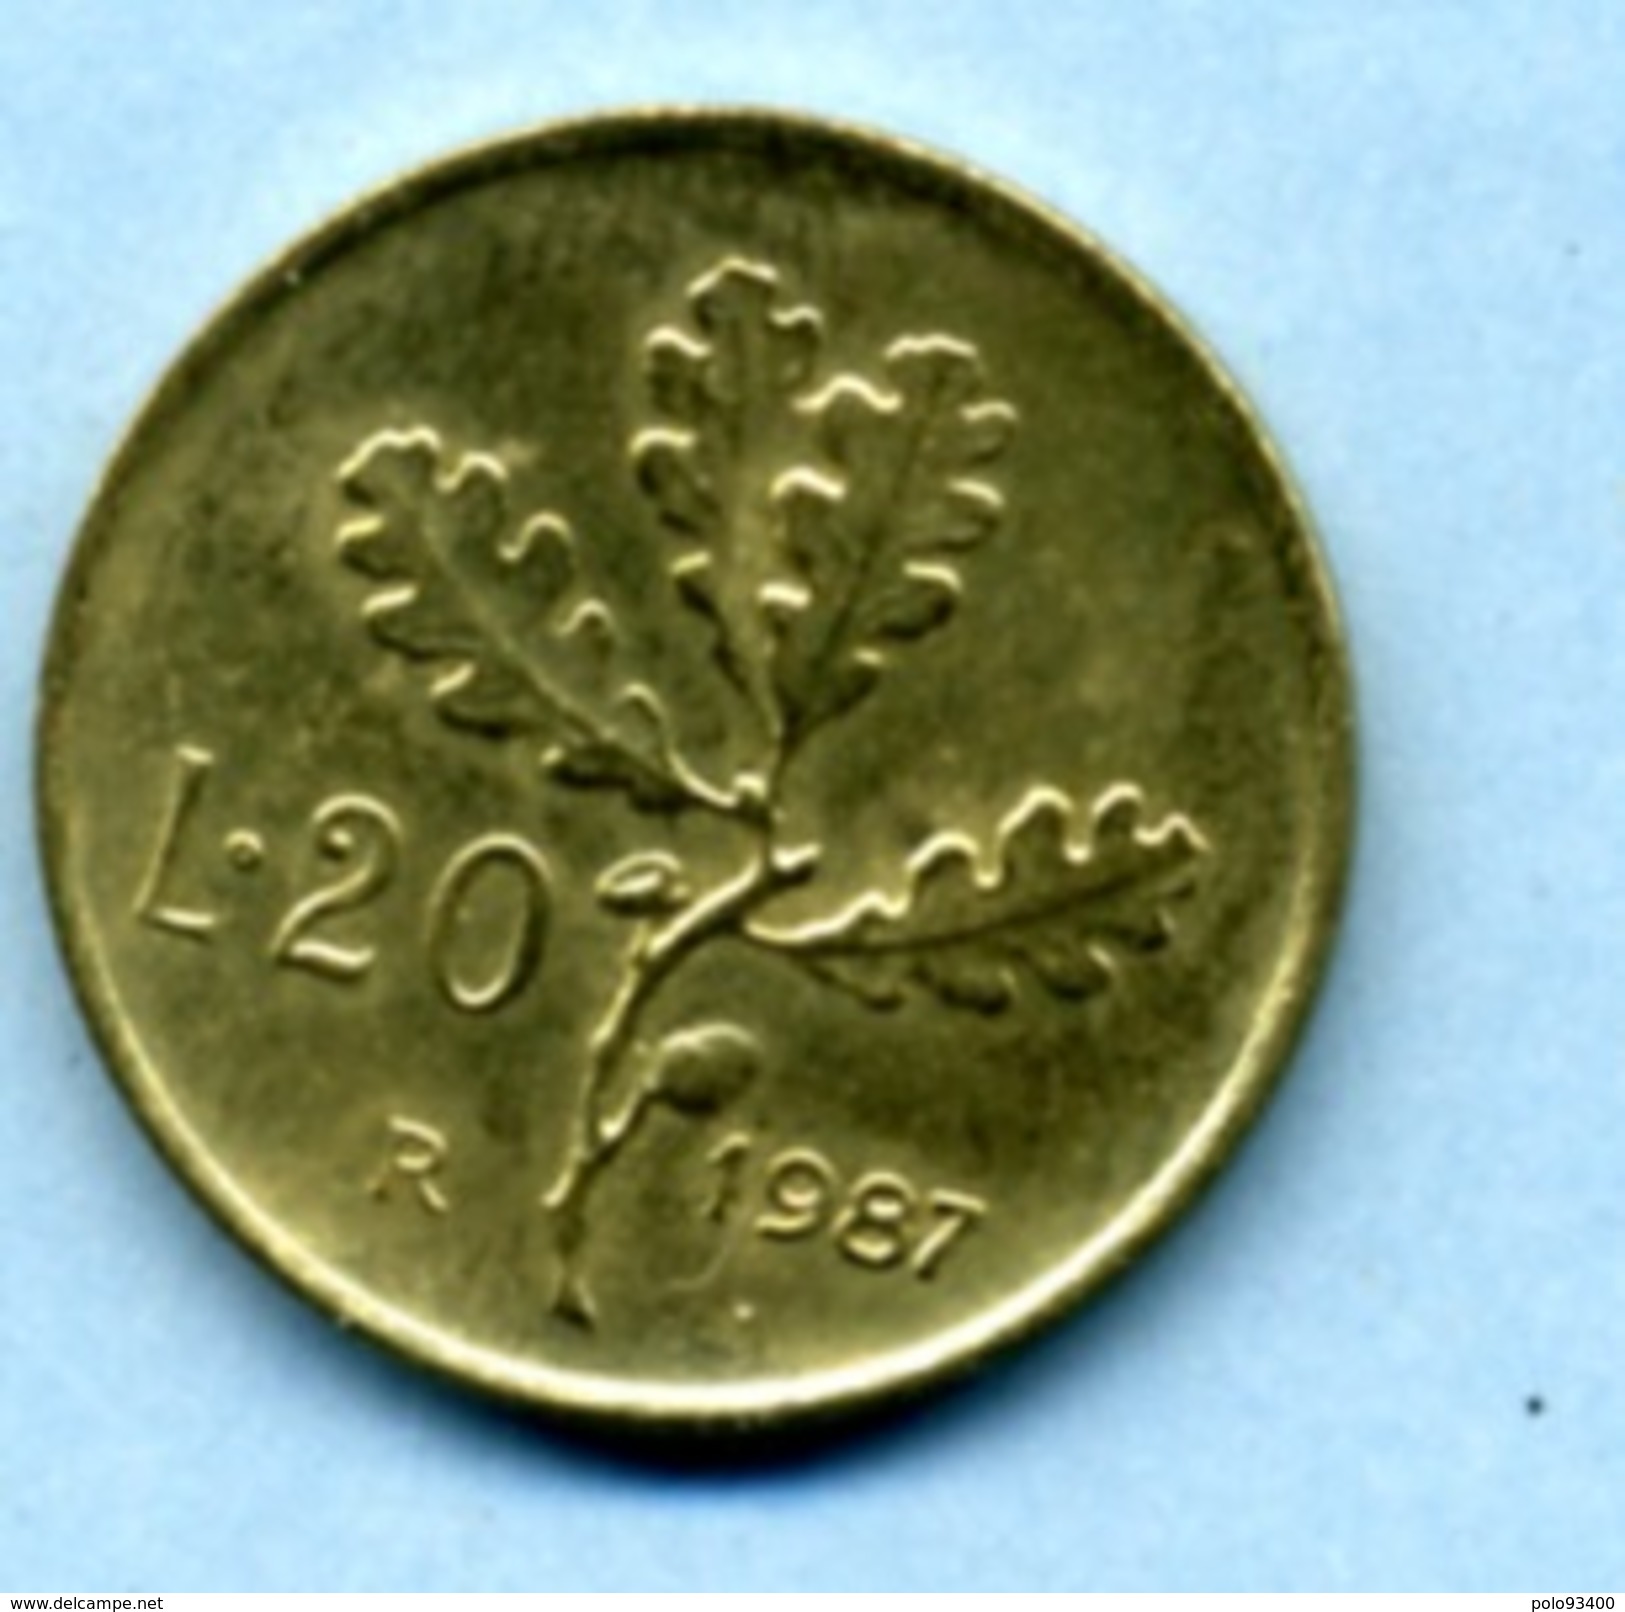 1987  20 LIRES - 20 Lire